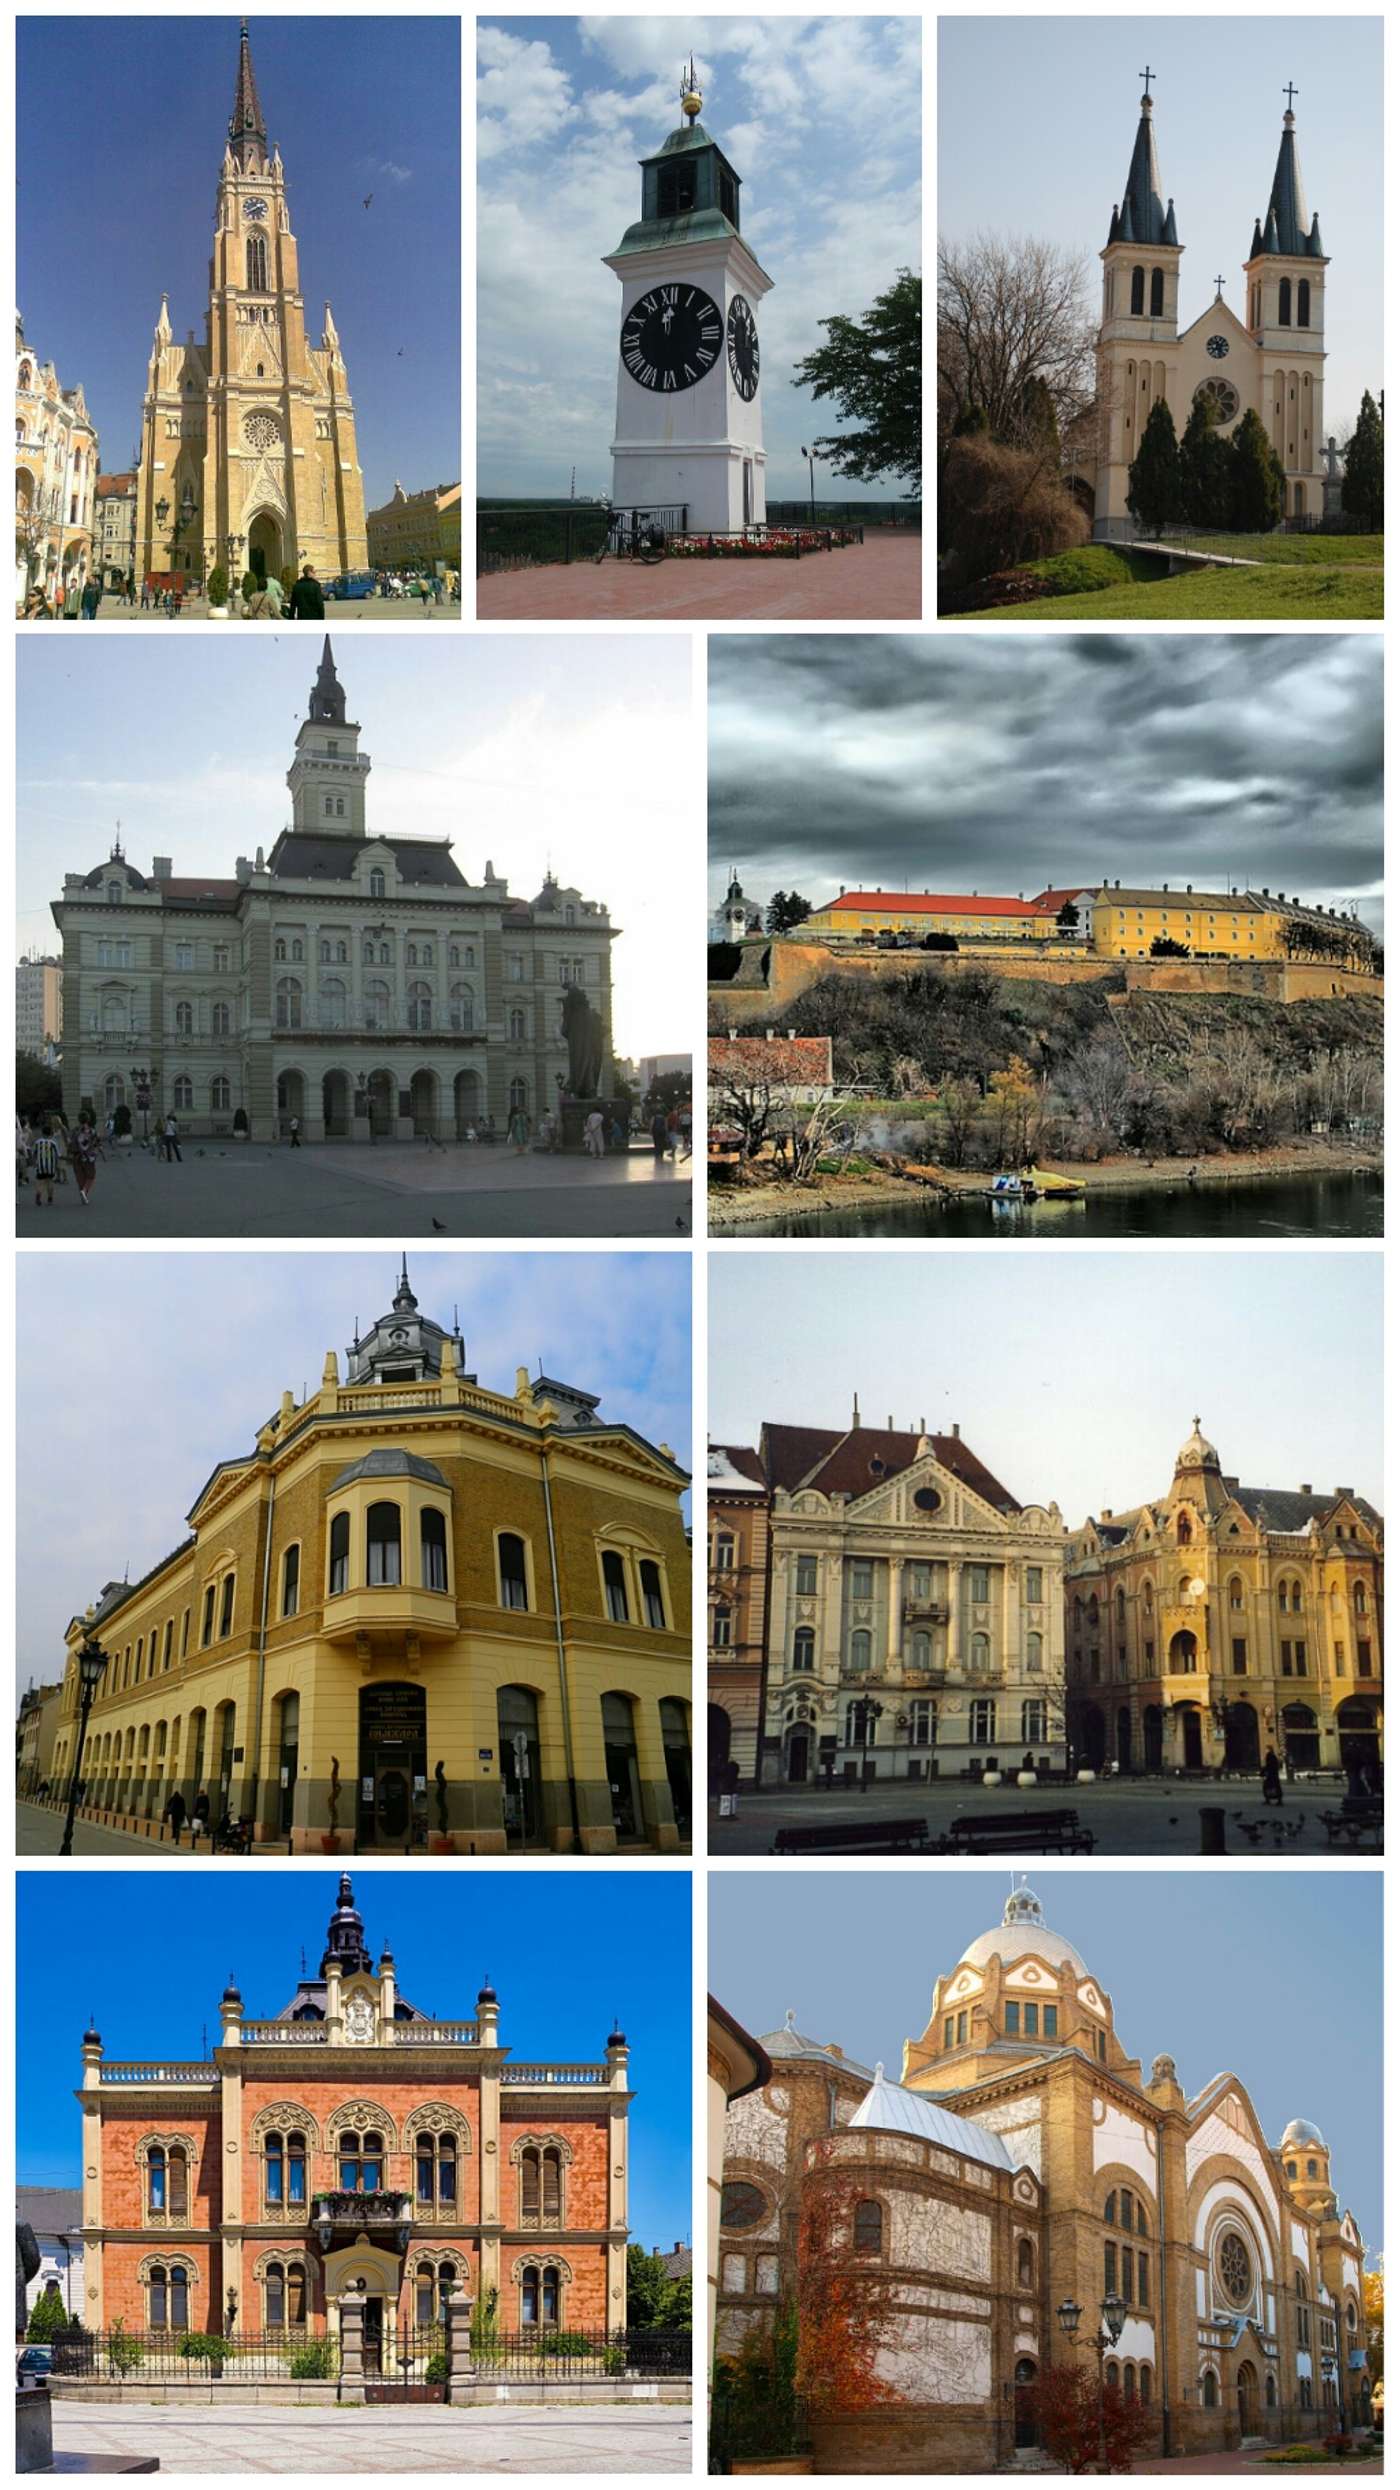 Temukan karya Novi Sad Anda.